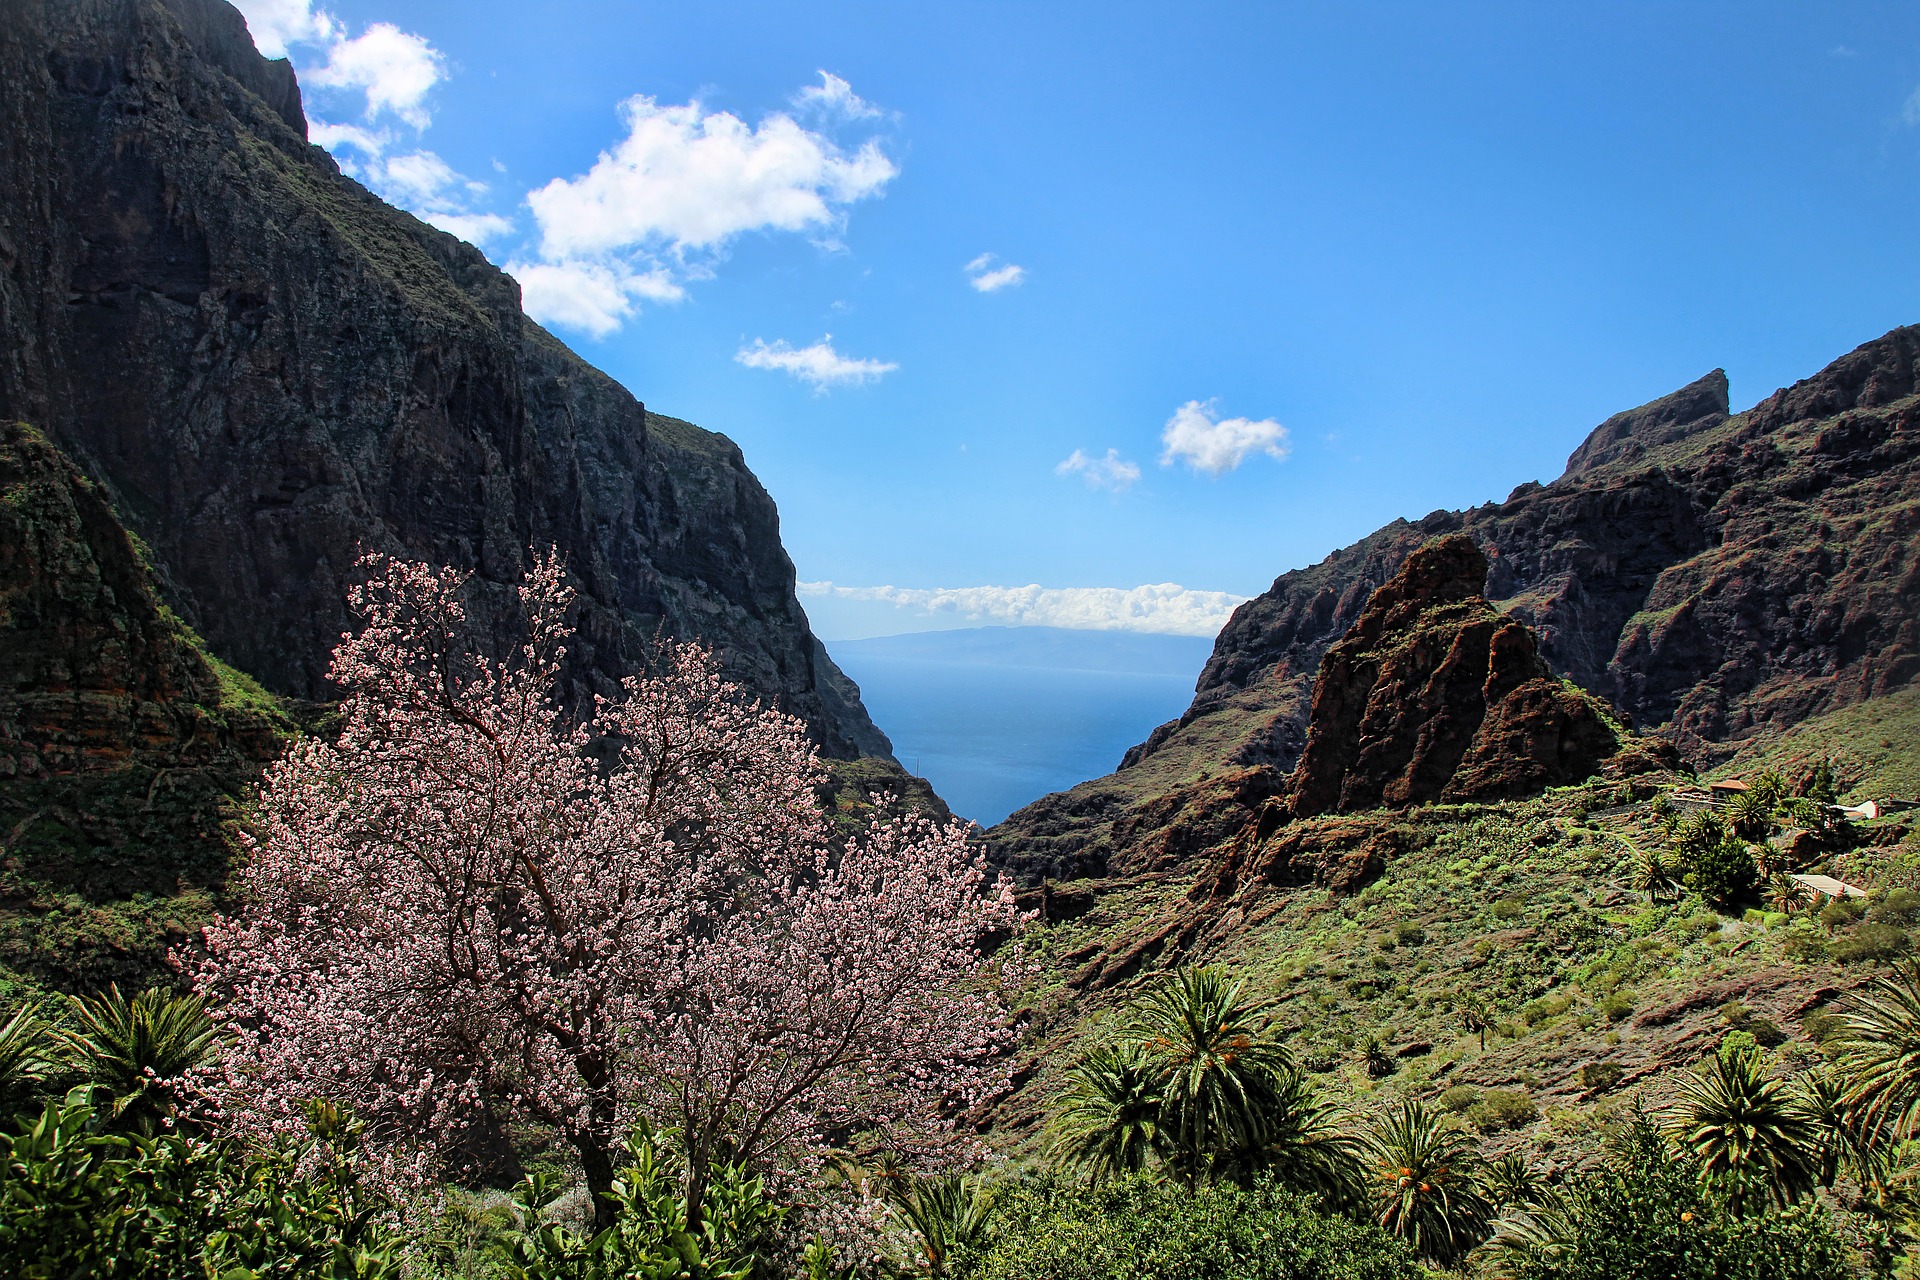 El Parque Rural de Teno, uno de los Parques Rurales de Tenerife protagonista del artículo sobre paisajes productivos de Canarias